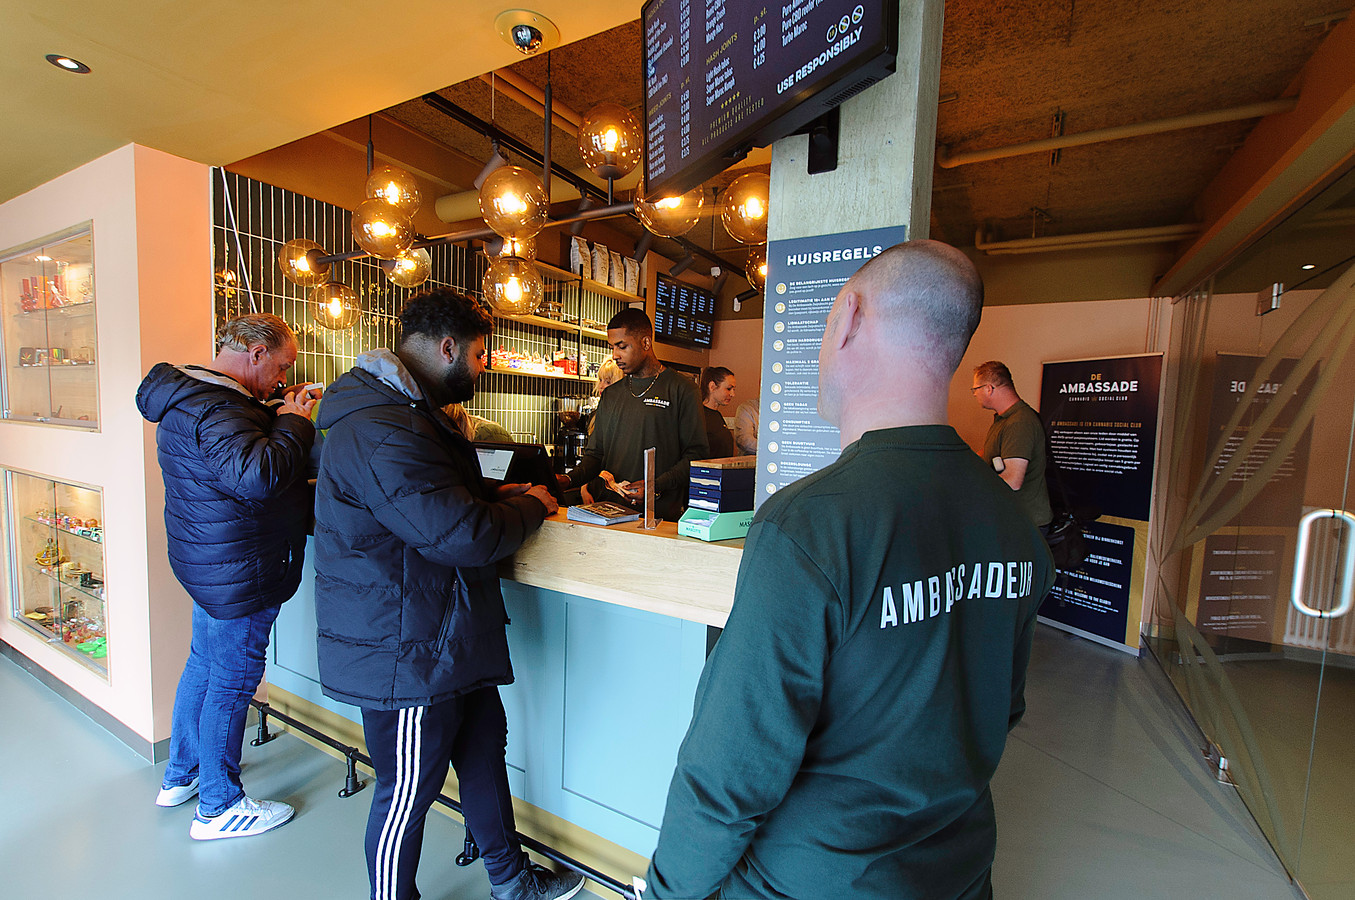 De nieuwe coffeeshop in Zwijndrecht, die in mei dit jaar opende, werkt eveneens met registratie om te kunnen controleren of er niet meer dan de toegestane 5 gram per persoon per dag wordt verkocht